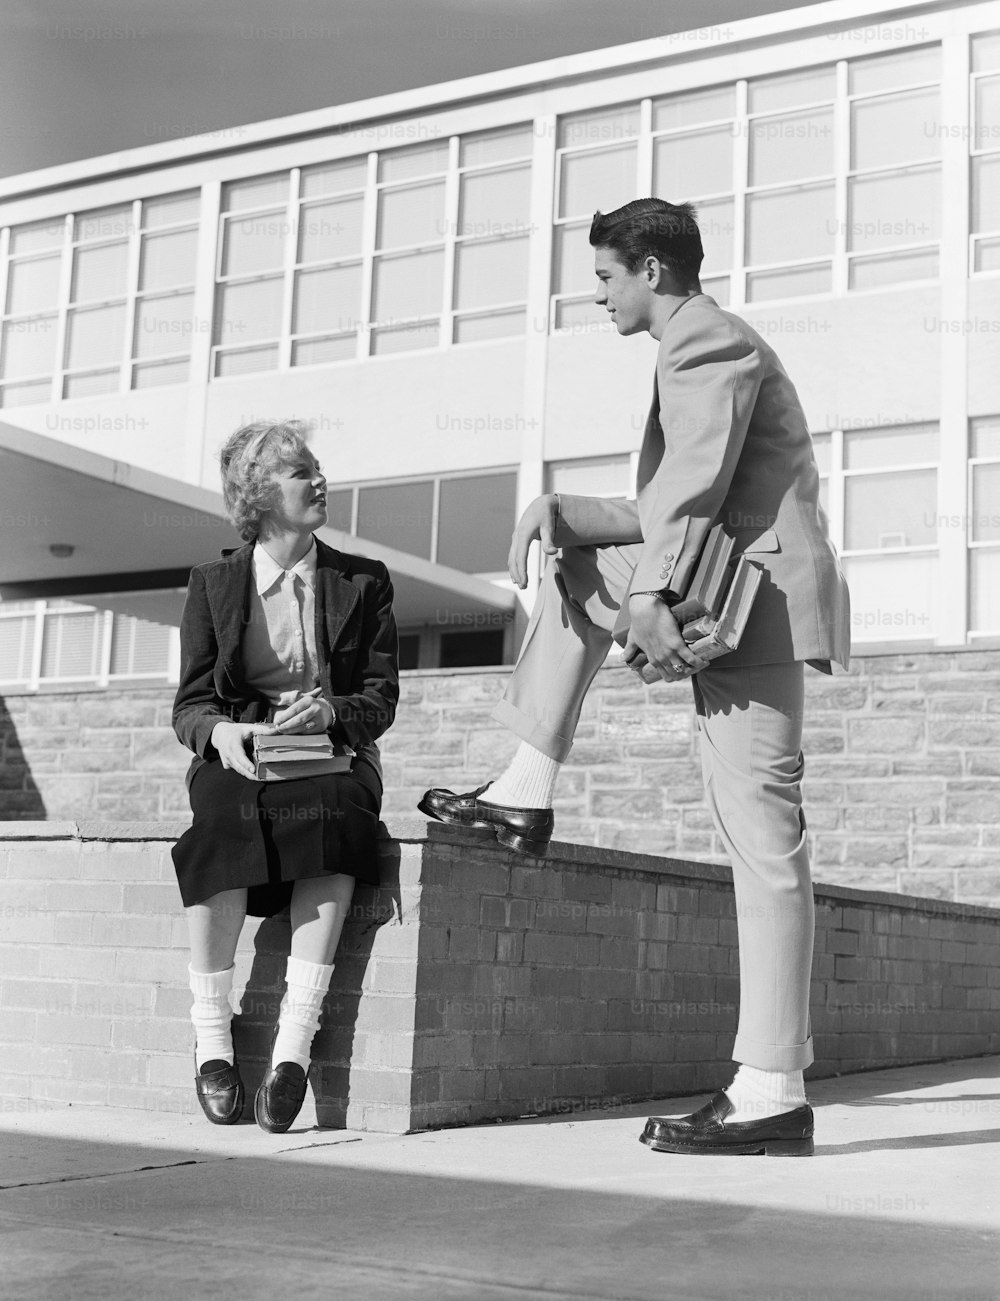 ESTADOS UNIDOS - POR VOLTA DE 1950: Garota do ensino médio sentada na parede, conversando com um adolescente.